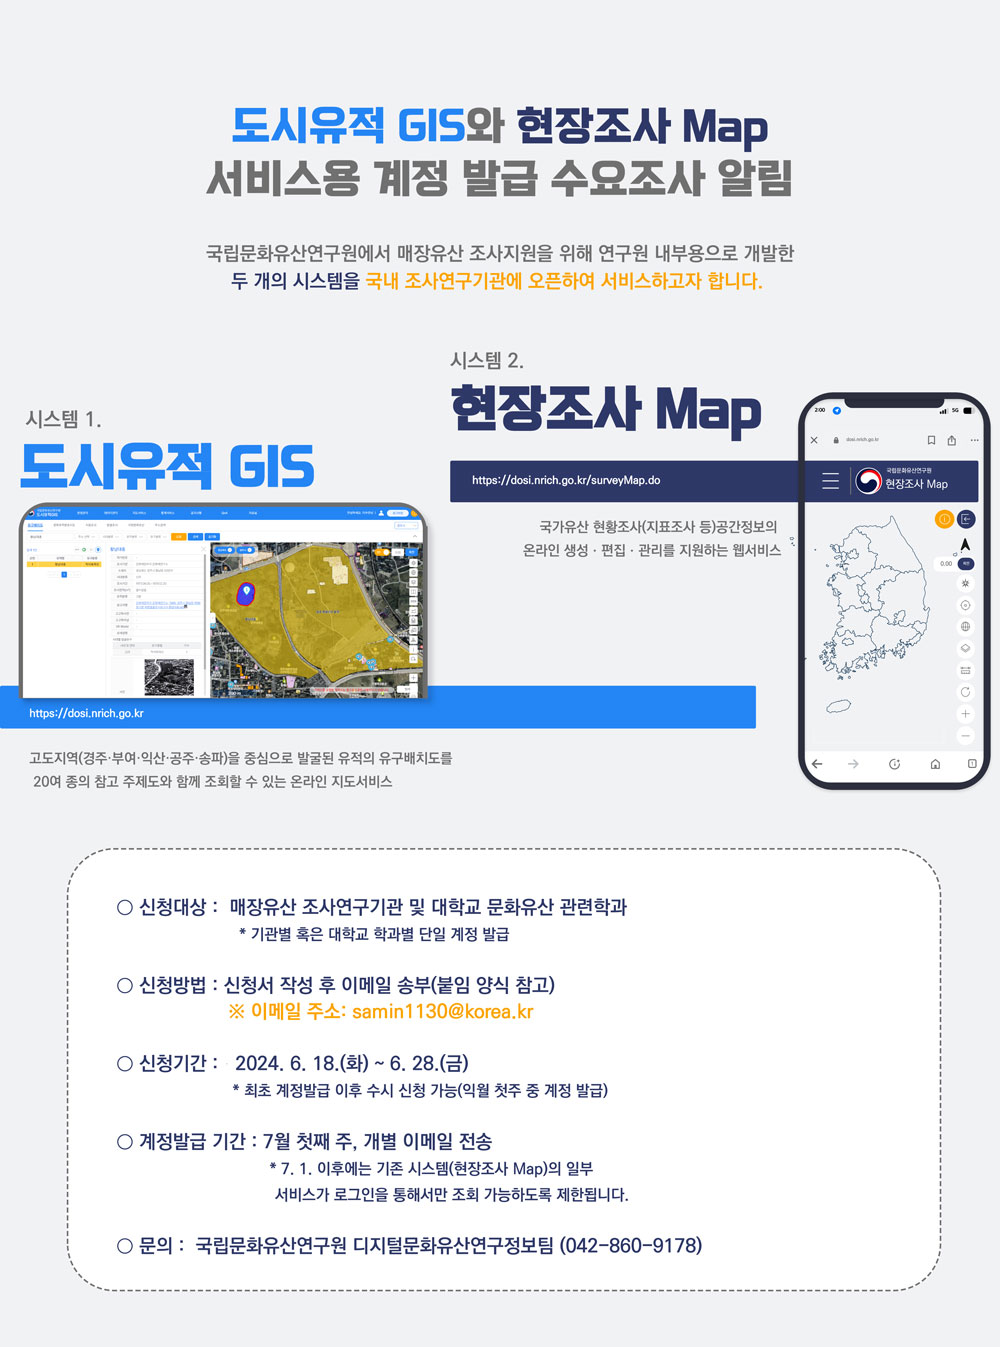 「도시유적 GIS」와 「현장조사 Map」 서비스용 계정 발급 수요조사 알림